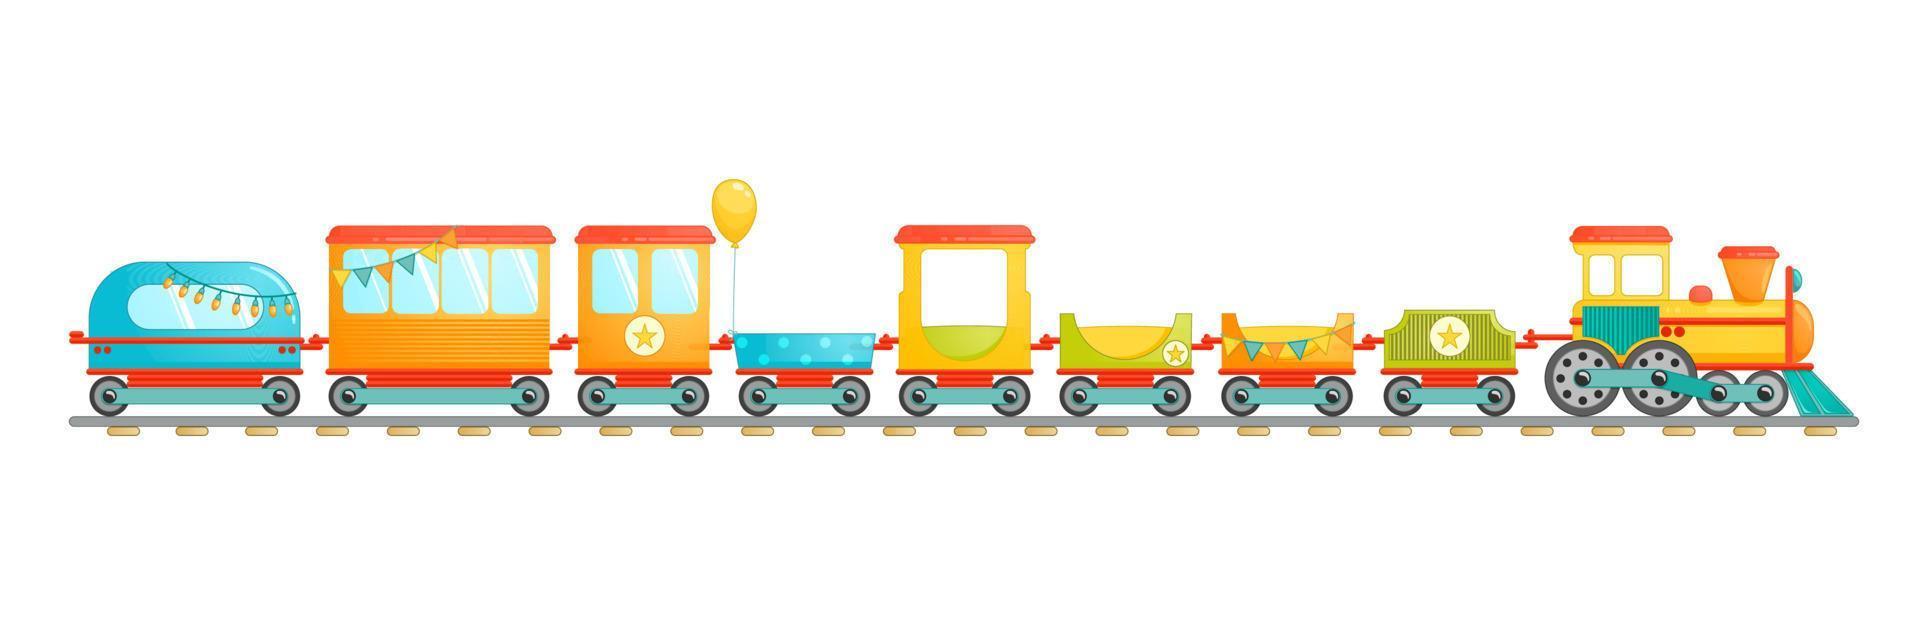 Kinderzugspielzeug im Cartoon-Stil. Vektor-Illustration isoliert auf weißem Hintergrund. vektor